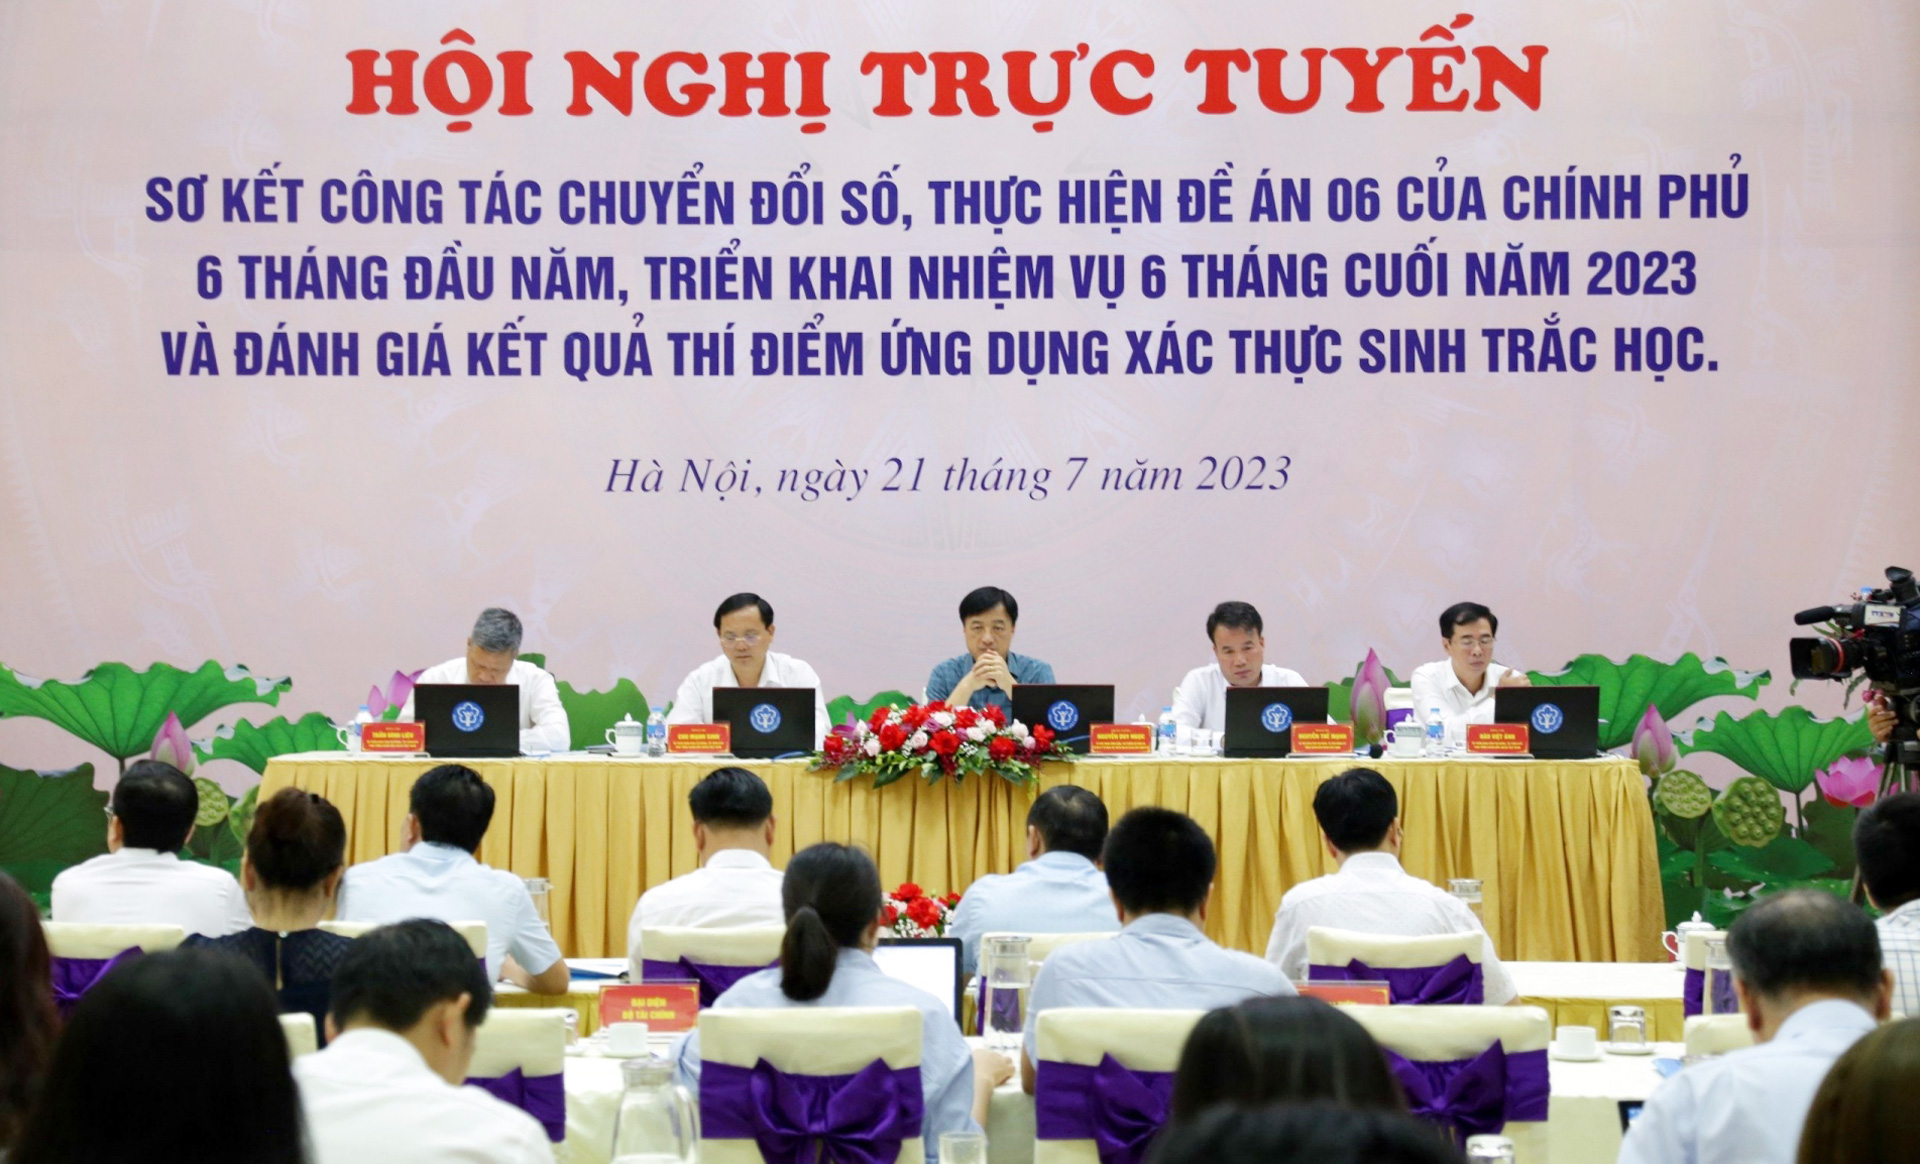 Nhiều thành tựu về chuyển đổi số đã được ngành BHXH Việt Nam triển khai thí điểm, đánh giá kết quả và nhân rộng